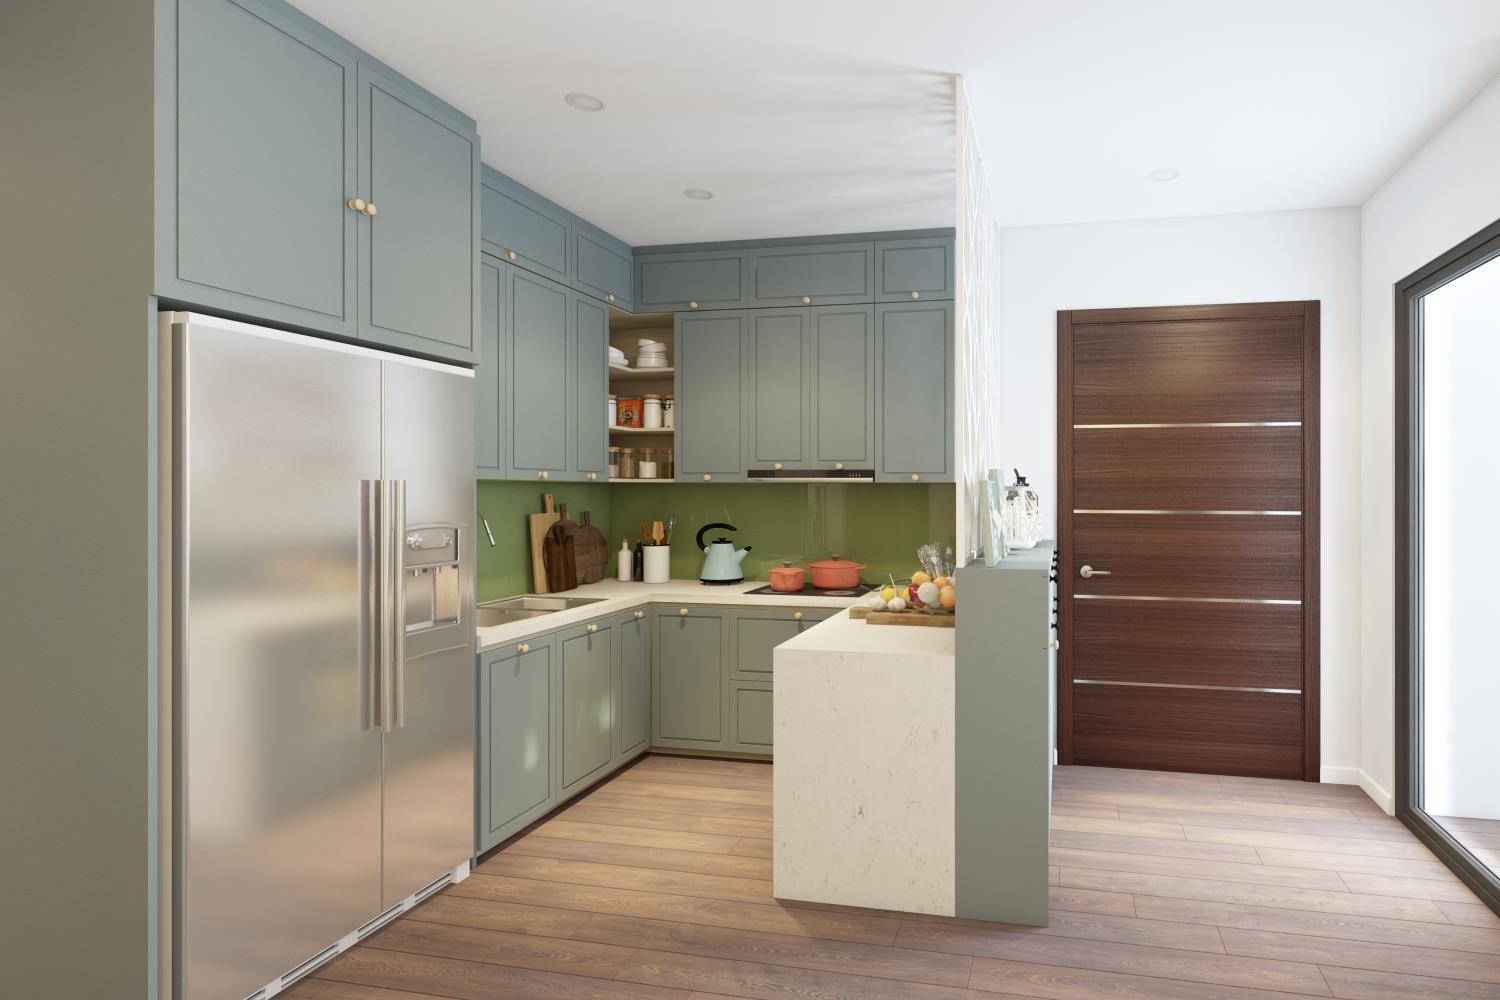 Thiết kế nội thất phòng bếp hiện đại cho nhà ống